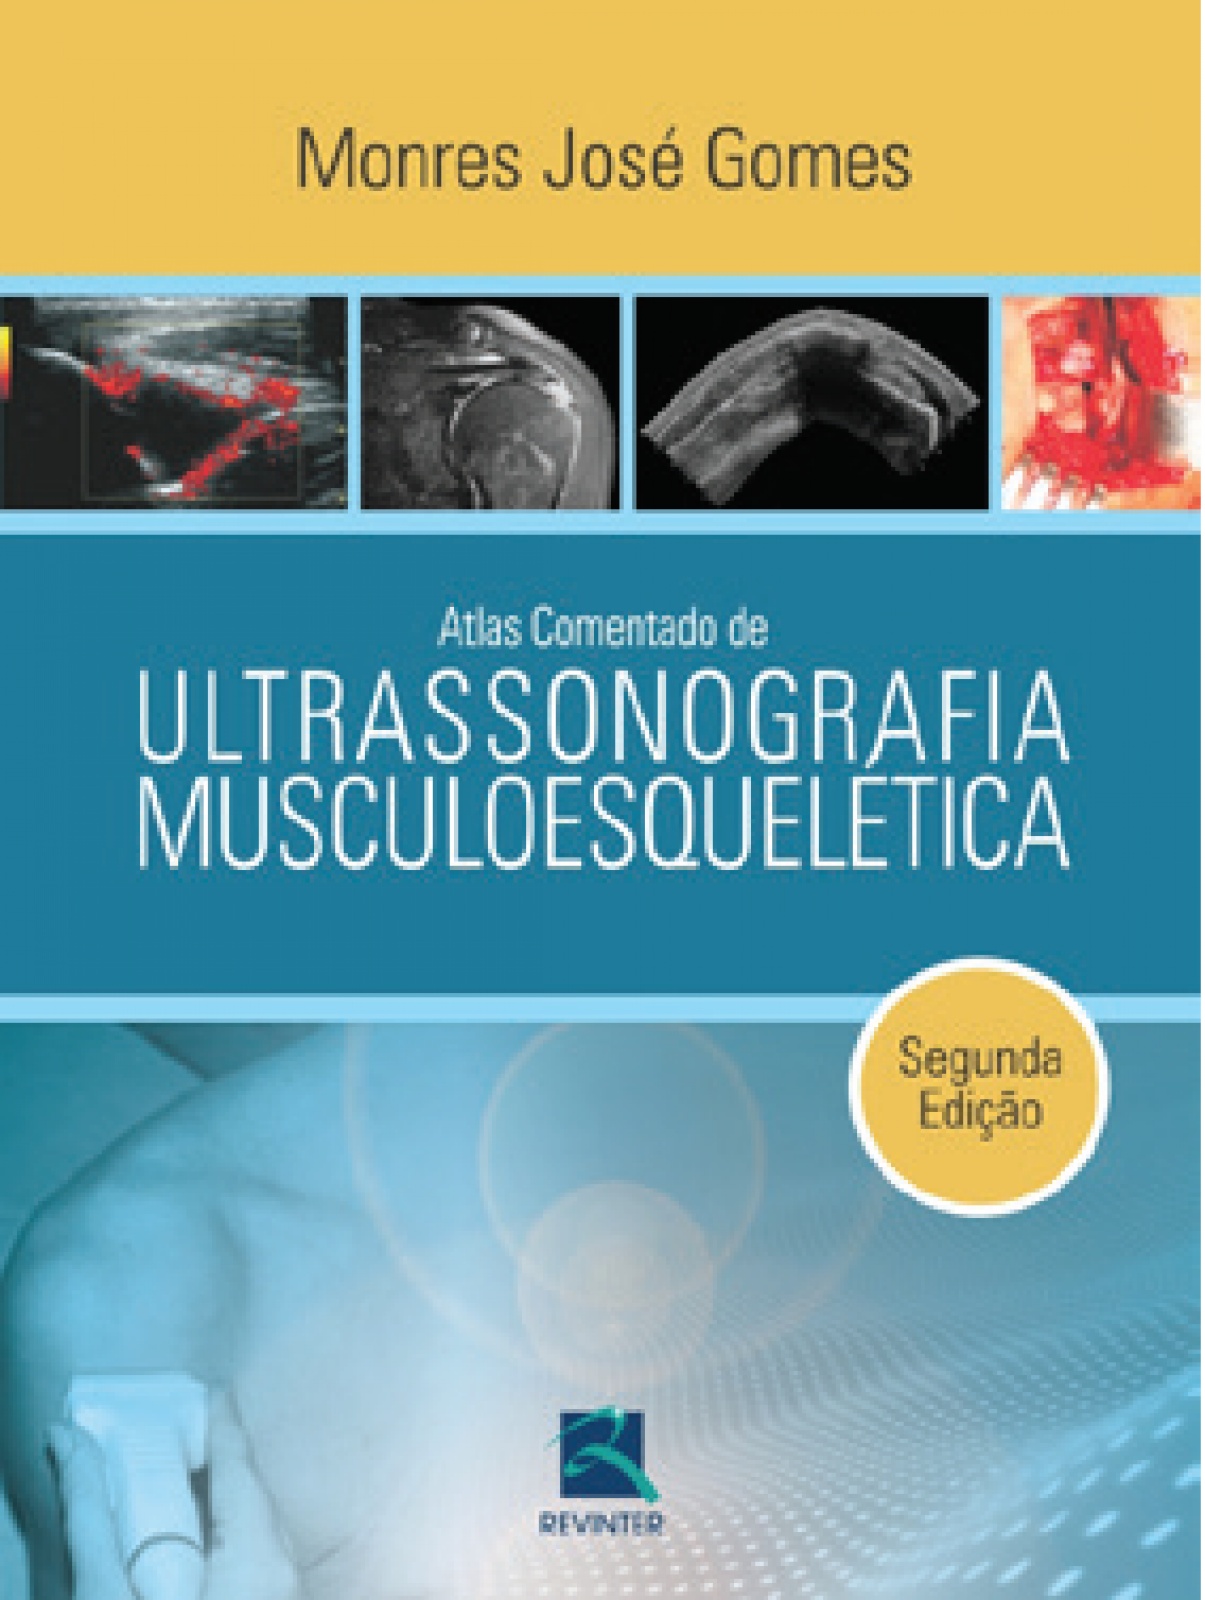 Atlas Comentado De Ultrassonografia Musculoesquelética, 2ª Edição